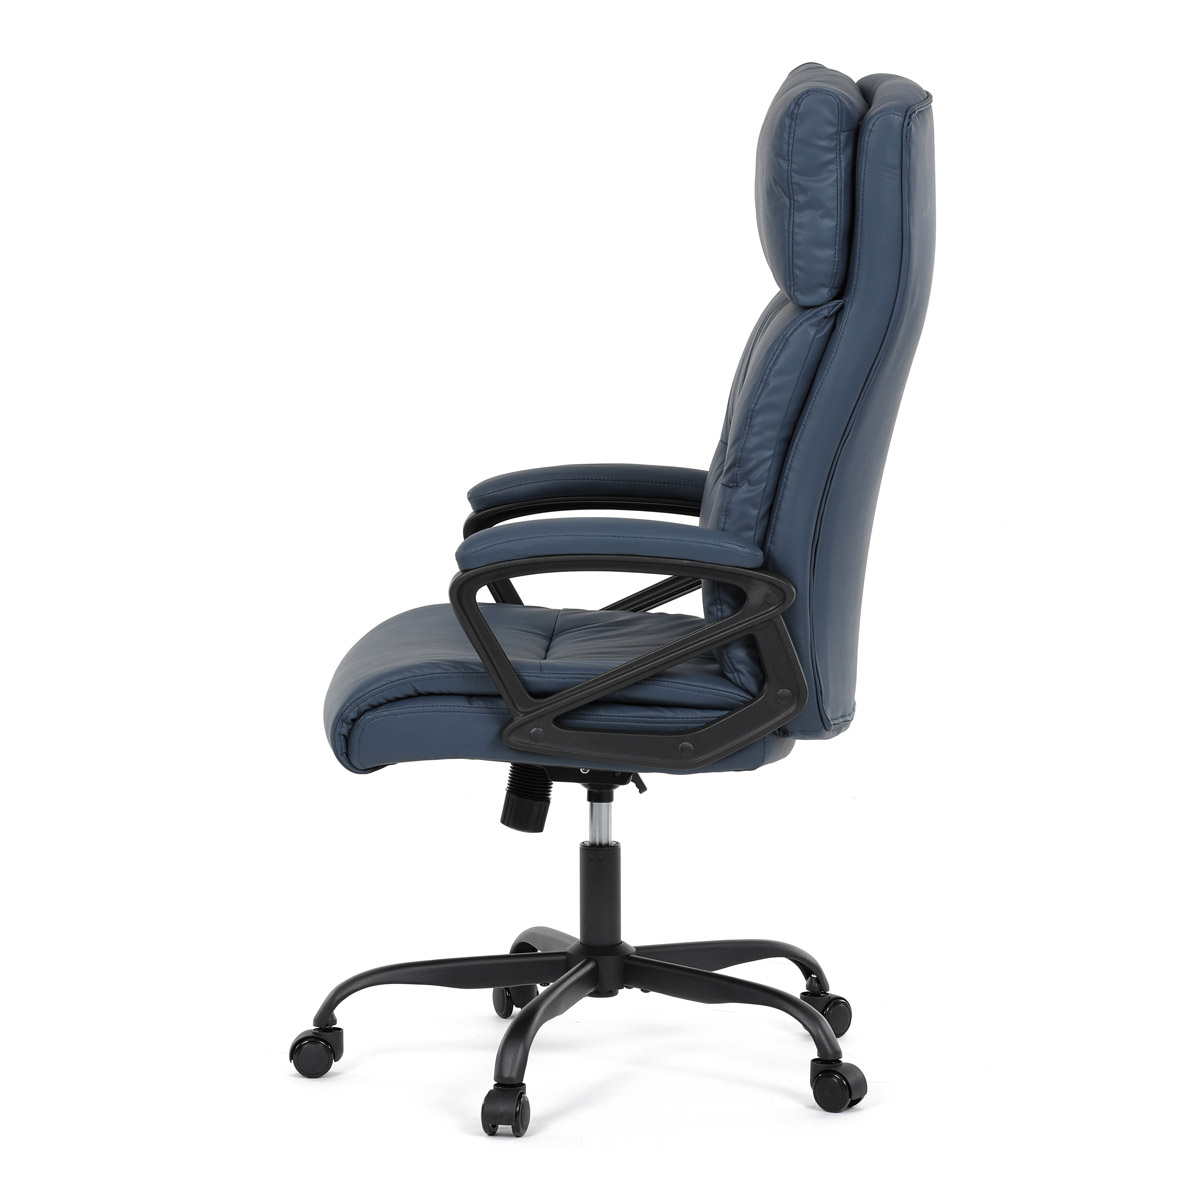 Kancelářská židle, tmavě modrá ekokůže, taštičkové pružiny, kovový kříž, kolečka na tvrdé podlahy